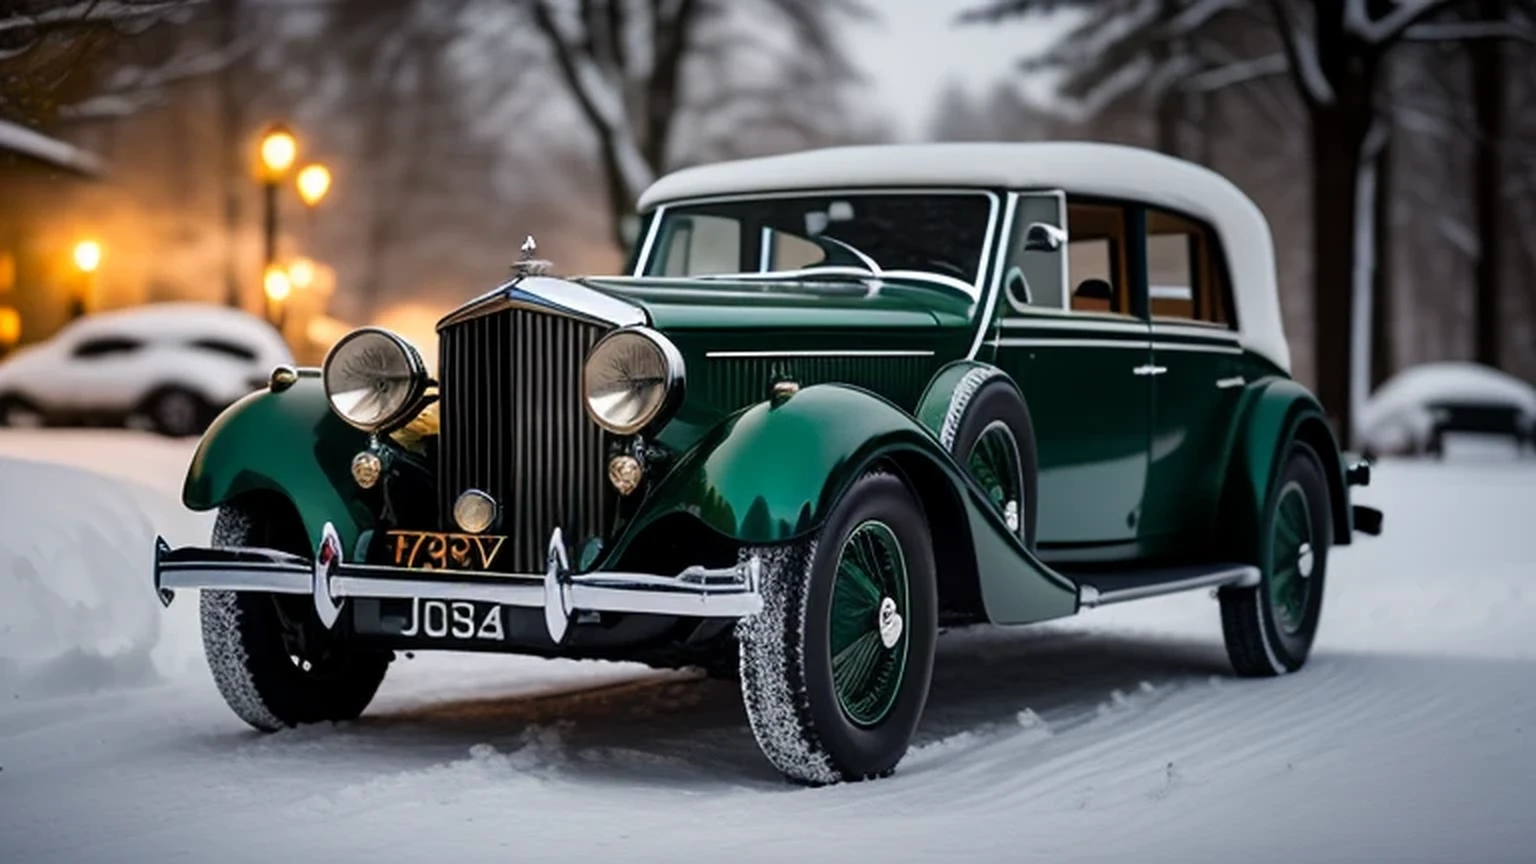 Green 1937 Blower Bentley in snow,